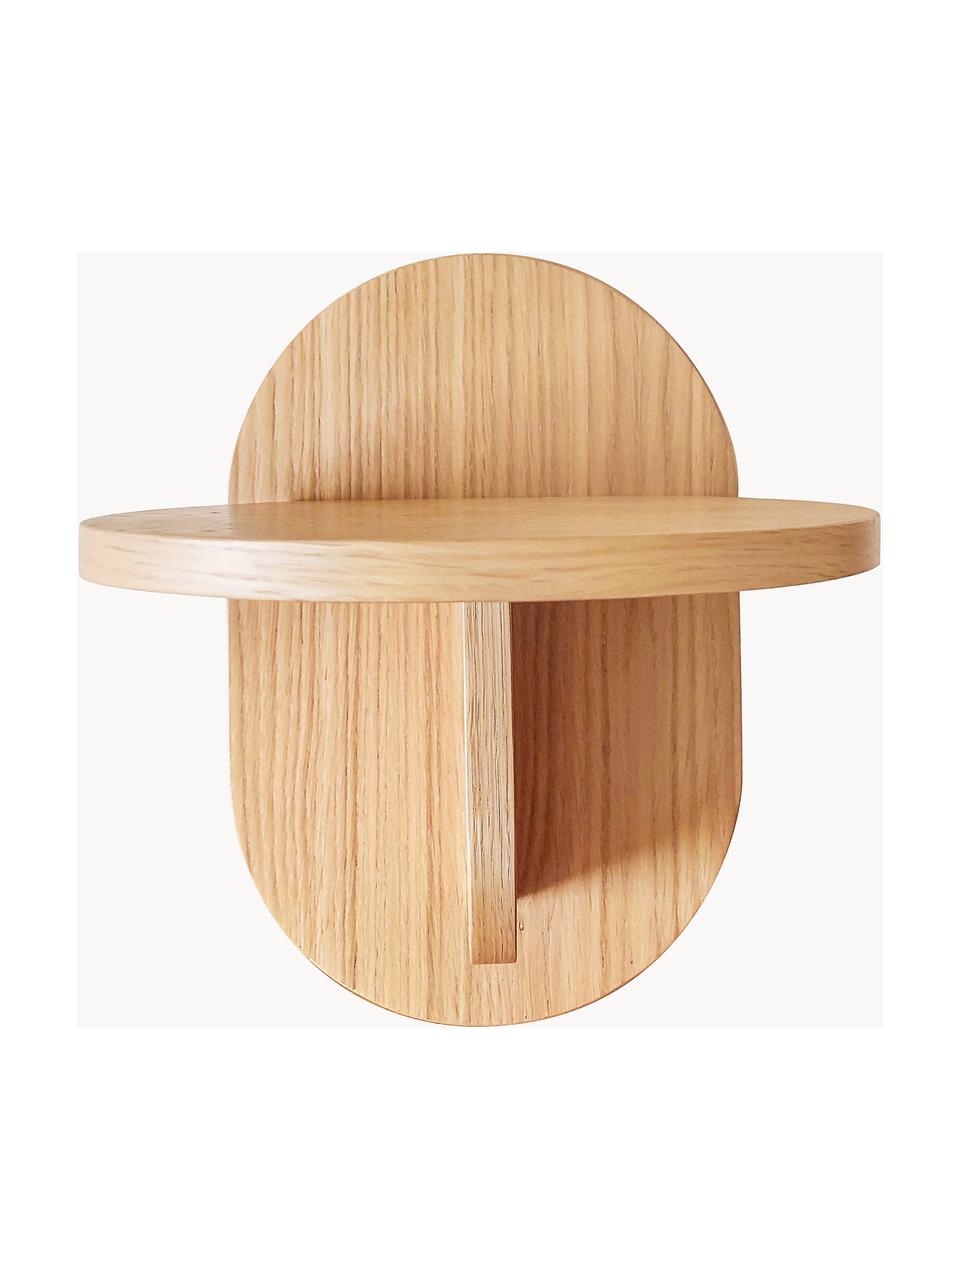 Nástěnná police Oak, Dřevovláknitá deska střední hustoty (MDF) s dubovou dýhou

Tento produkt je vyroben z udržitelných zdrojů dřeva s certifikací FSC®., Dřevo, Š 20 cm, V 30 cm